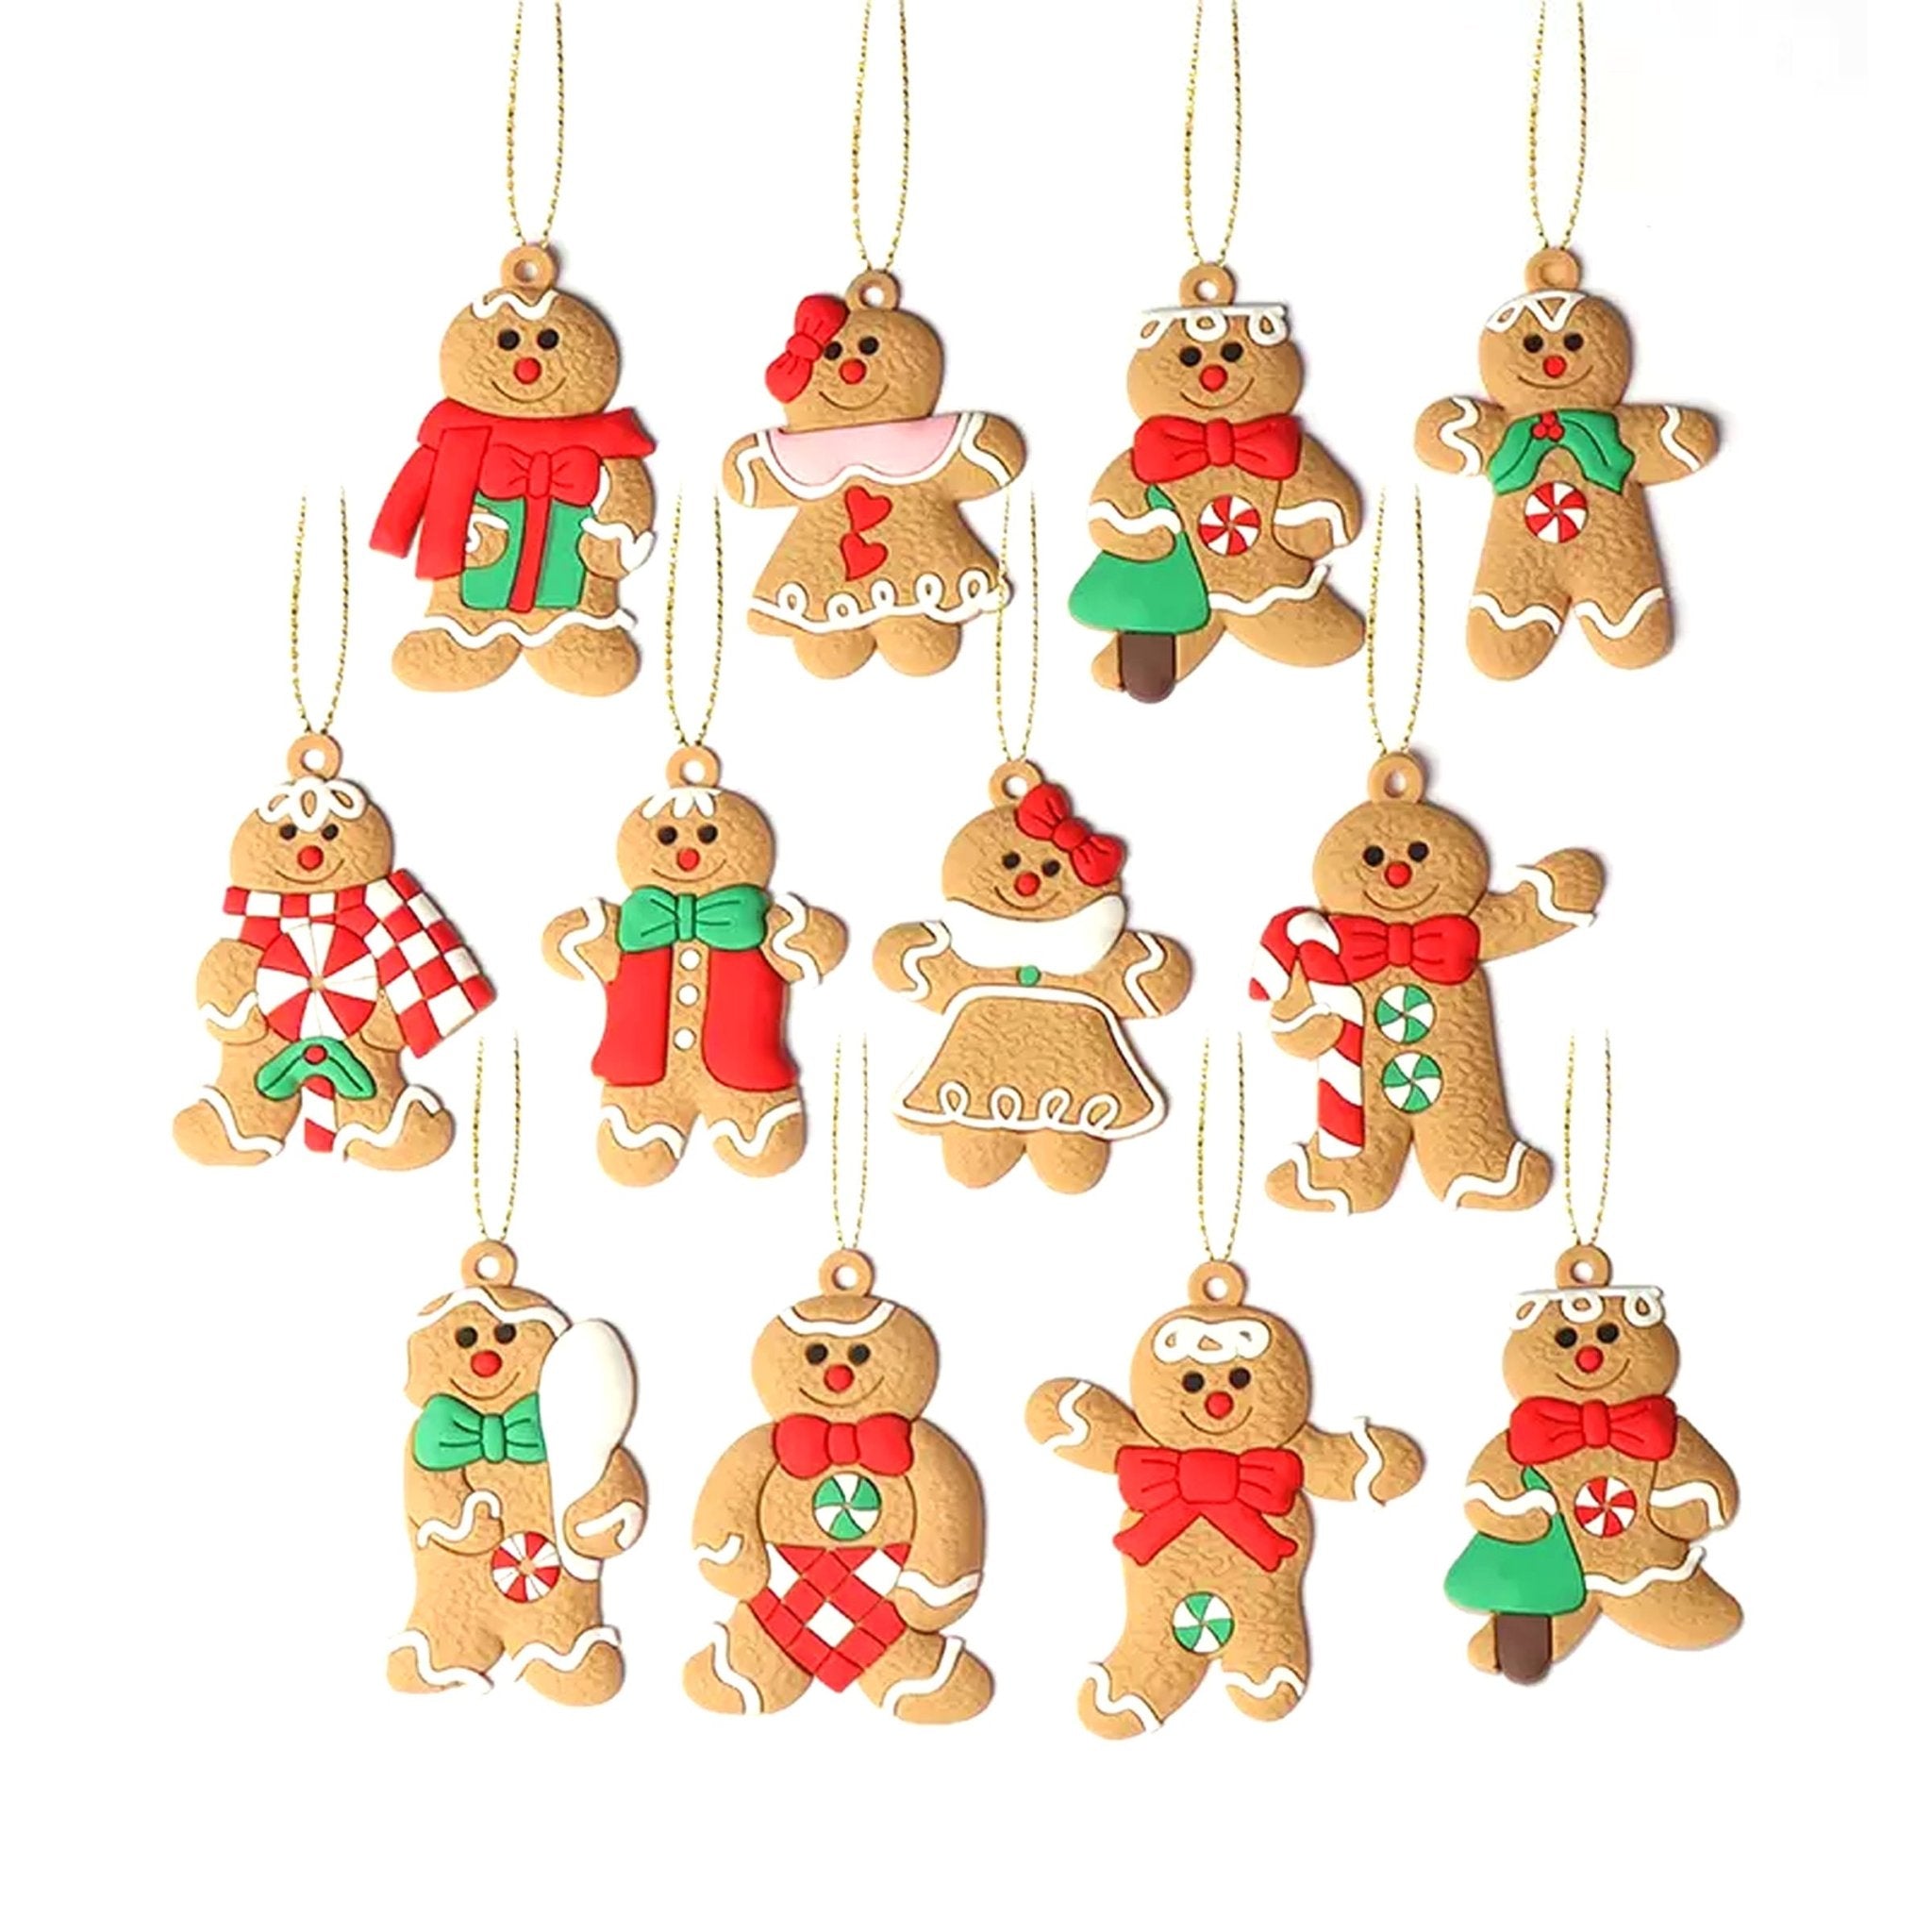 12pcs 7cm Gingerbread Shatterproof Ornaments Set 00712 - MODA FLORA Santa's Workshop